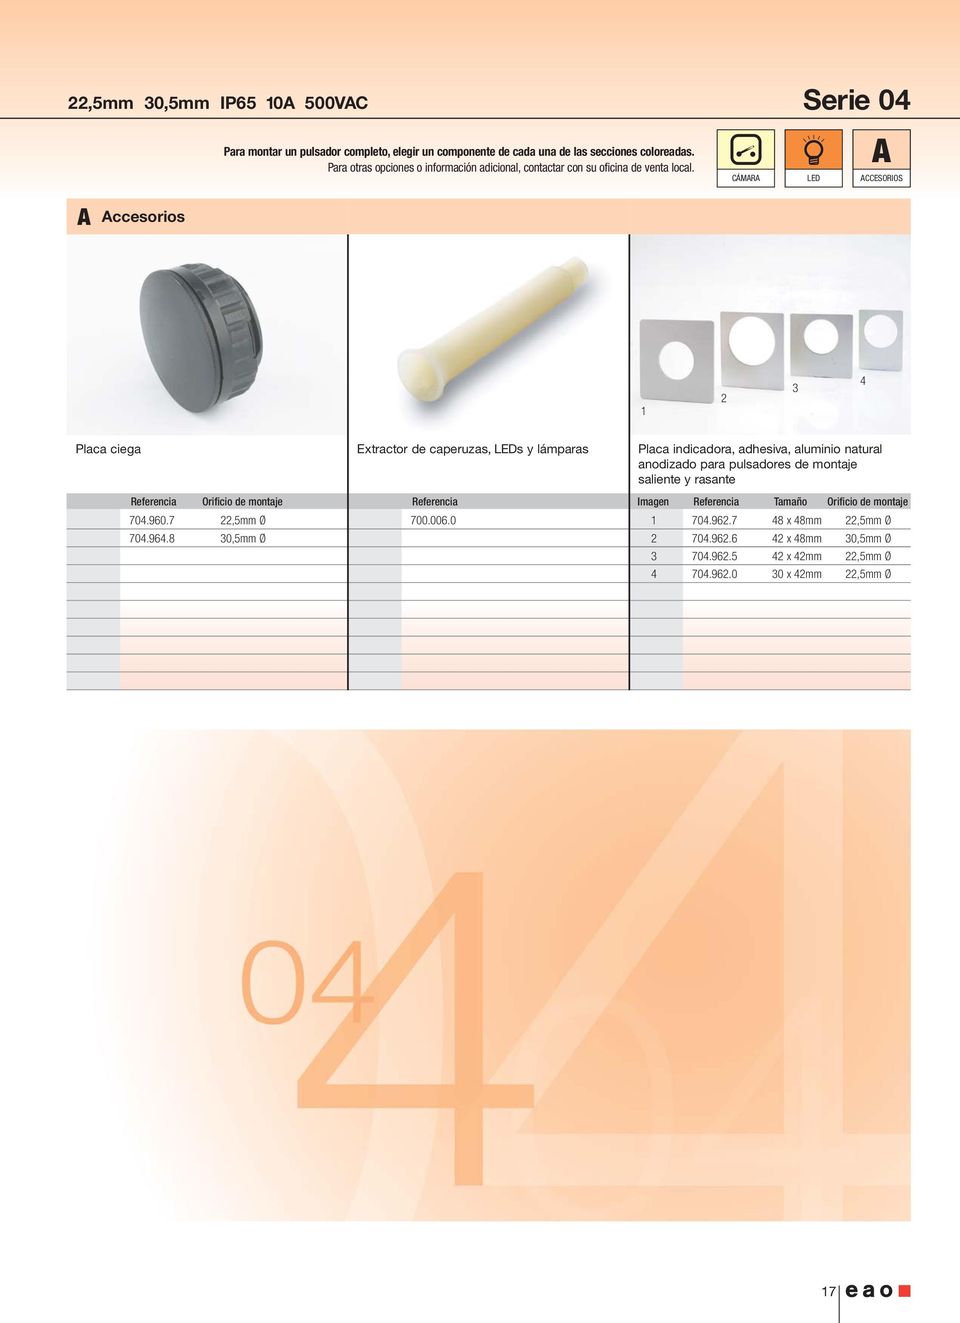 0 Placa indicadora, adhesiva, aluminio natural anodizado para pulsadores de montaje saliente y rasante Imagen